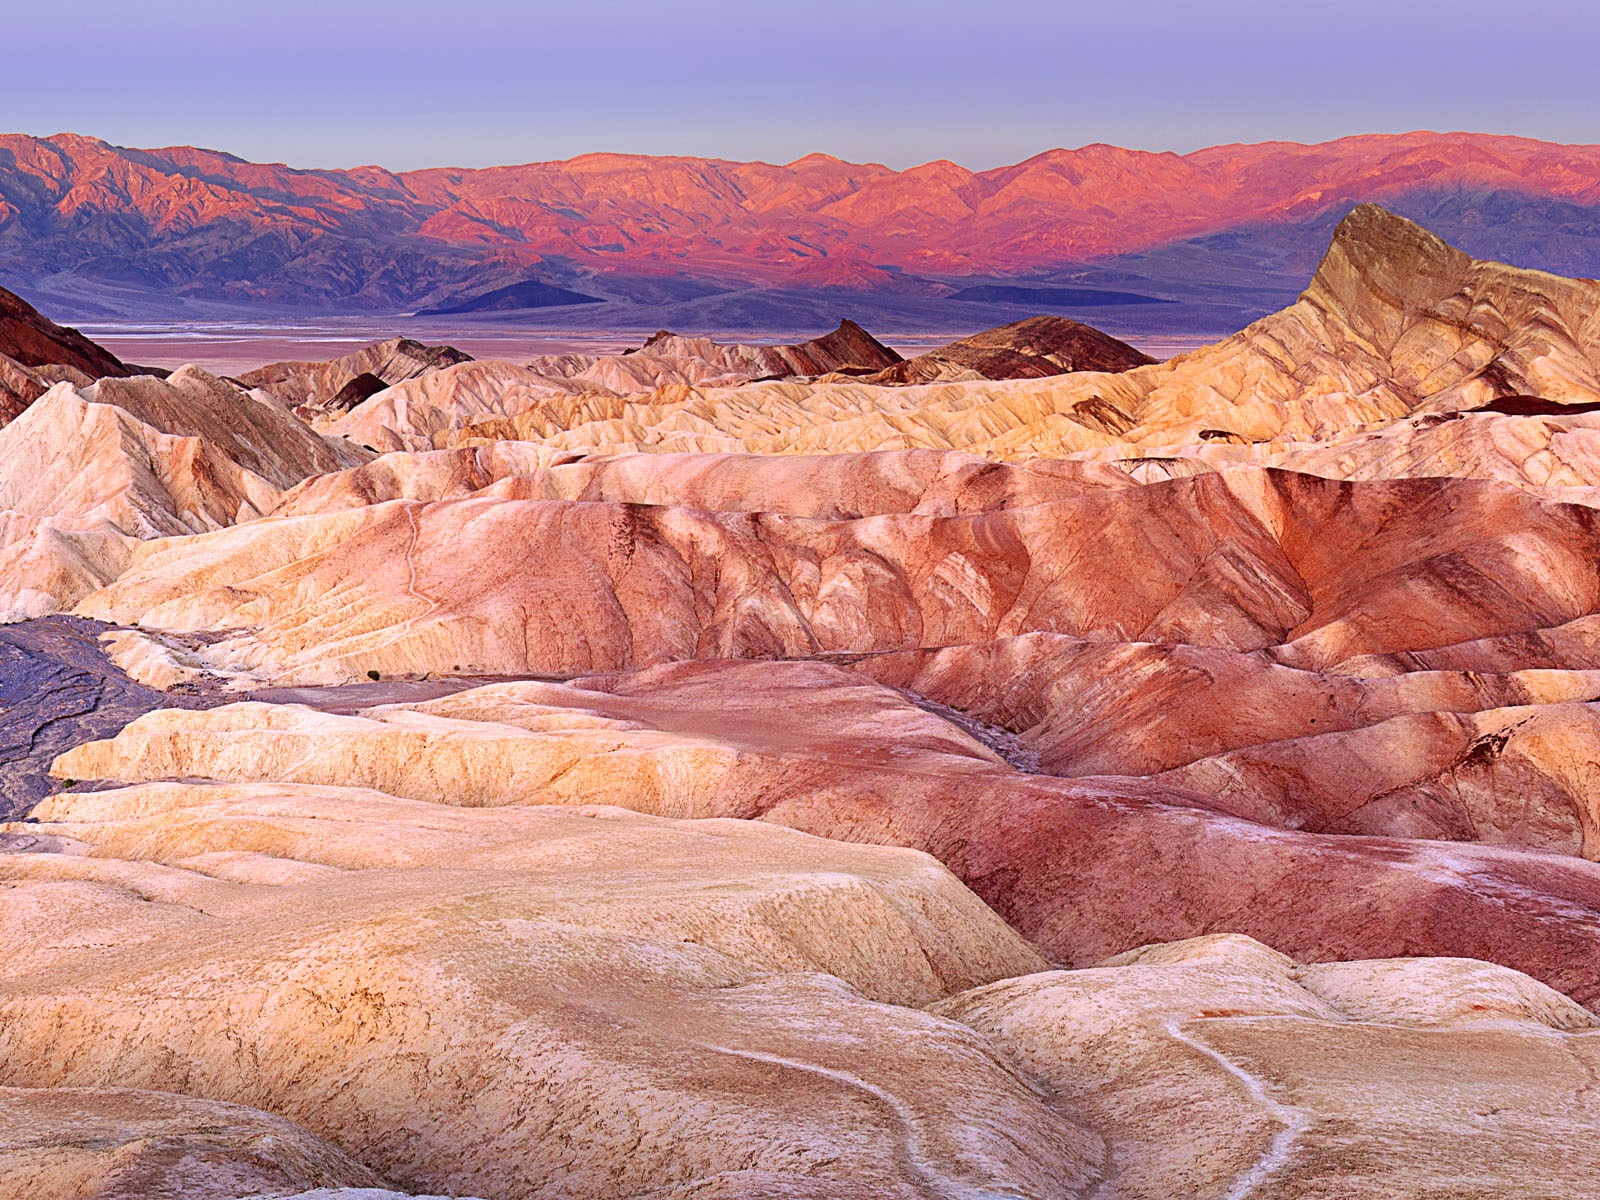 Les déserts chauds et arides, de Windows 8 fonds d'écran widescreen panoramique #10 - 1600x1200